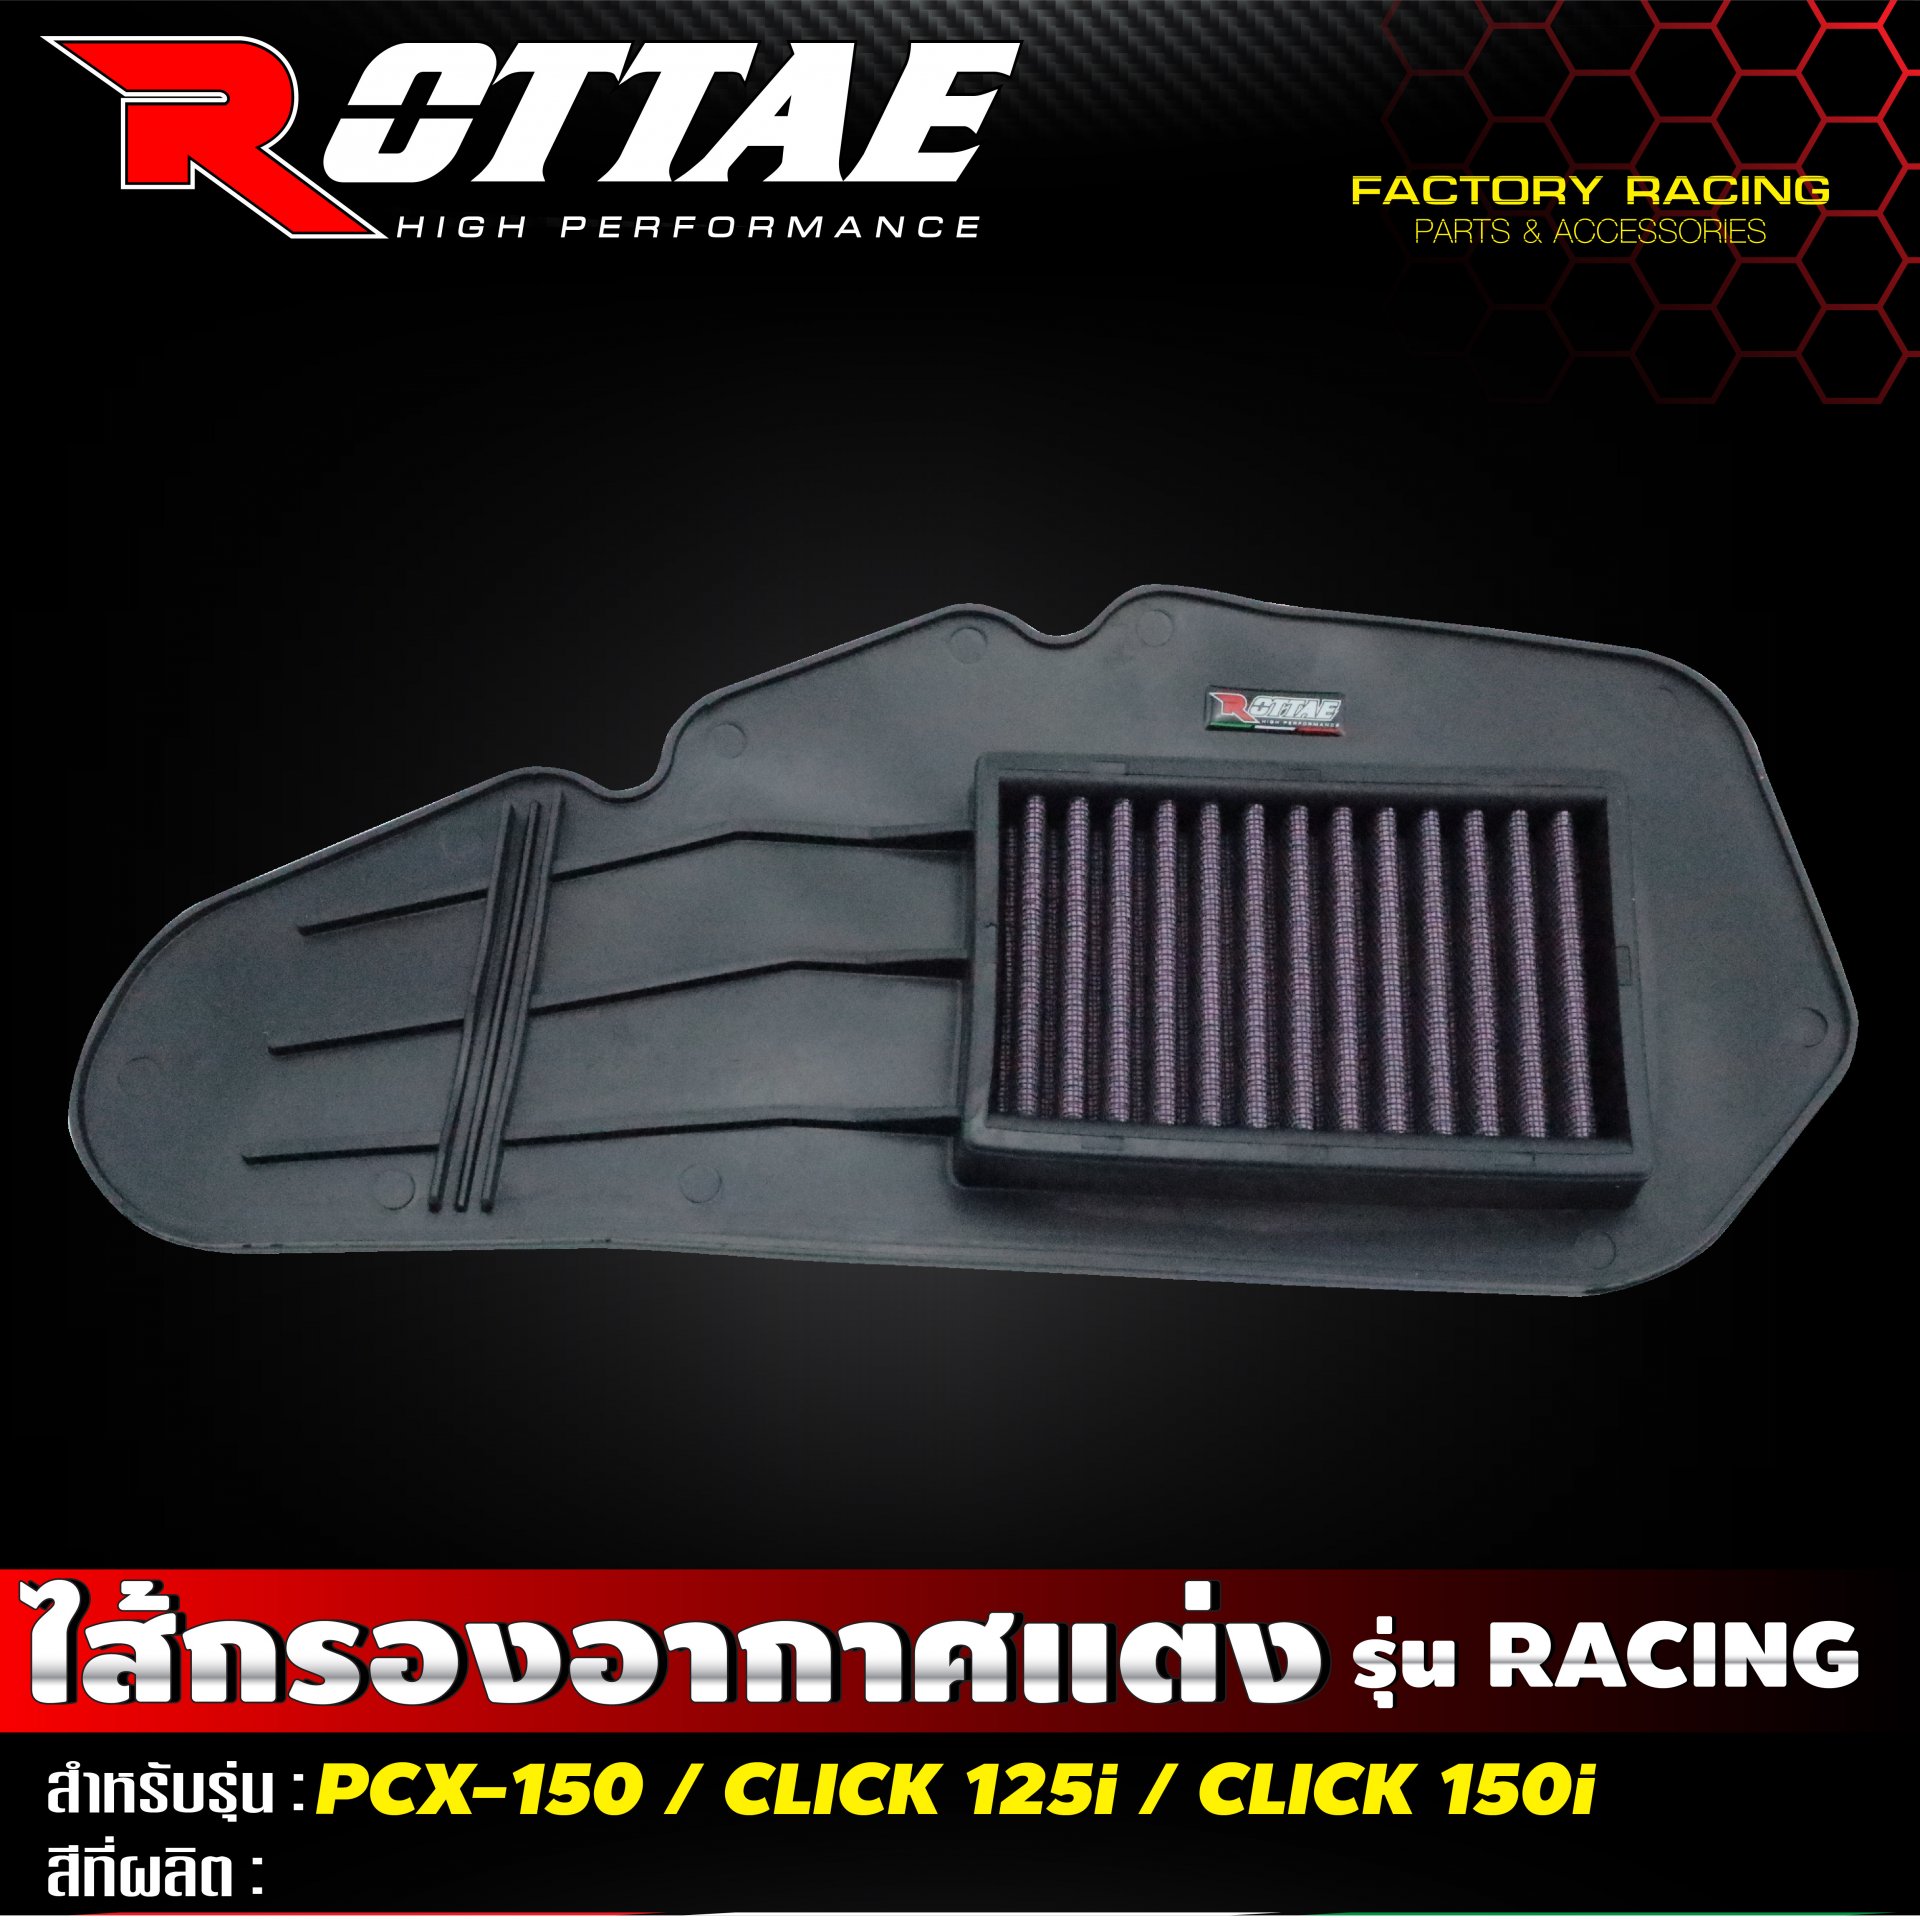 กรองอากาศแต่ง Racing #PCX-150 / CLICK-125 i ROTTAE